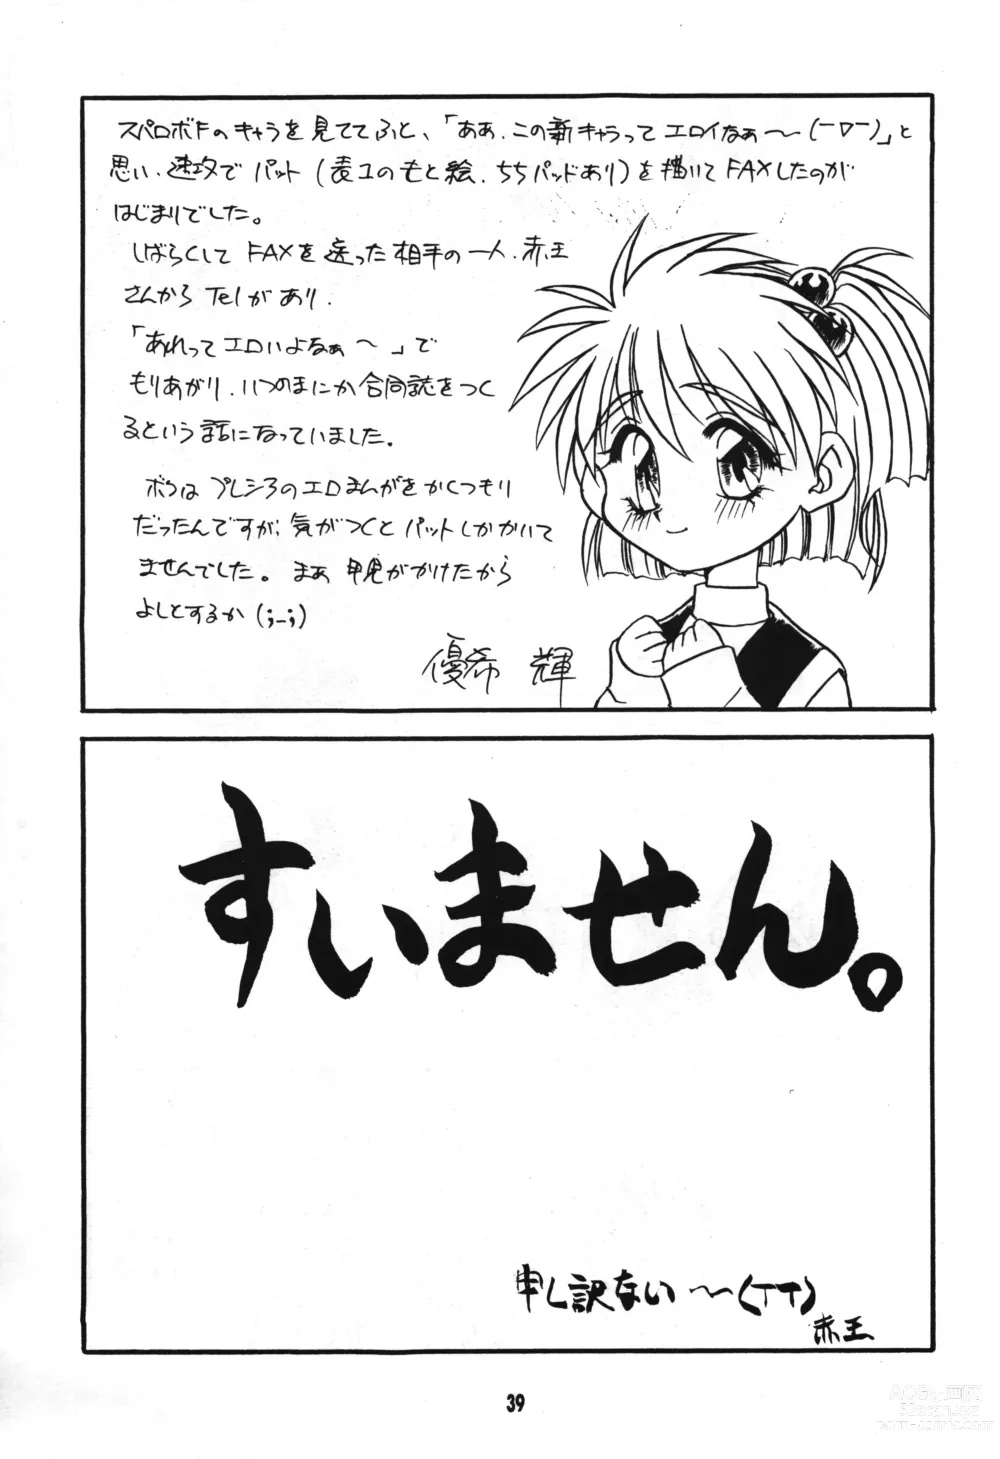 Page 38 of doujinshi Seigi wa Katsu no yo!!